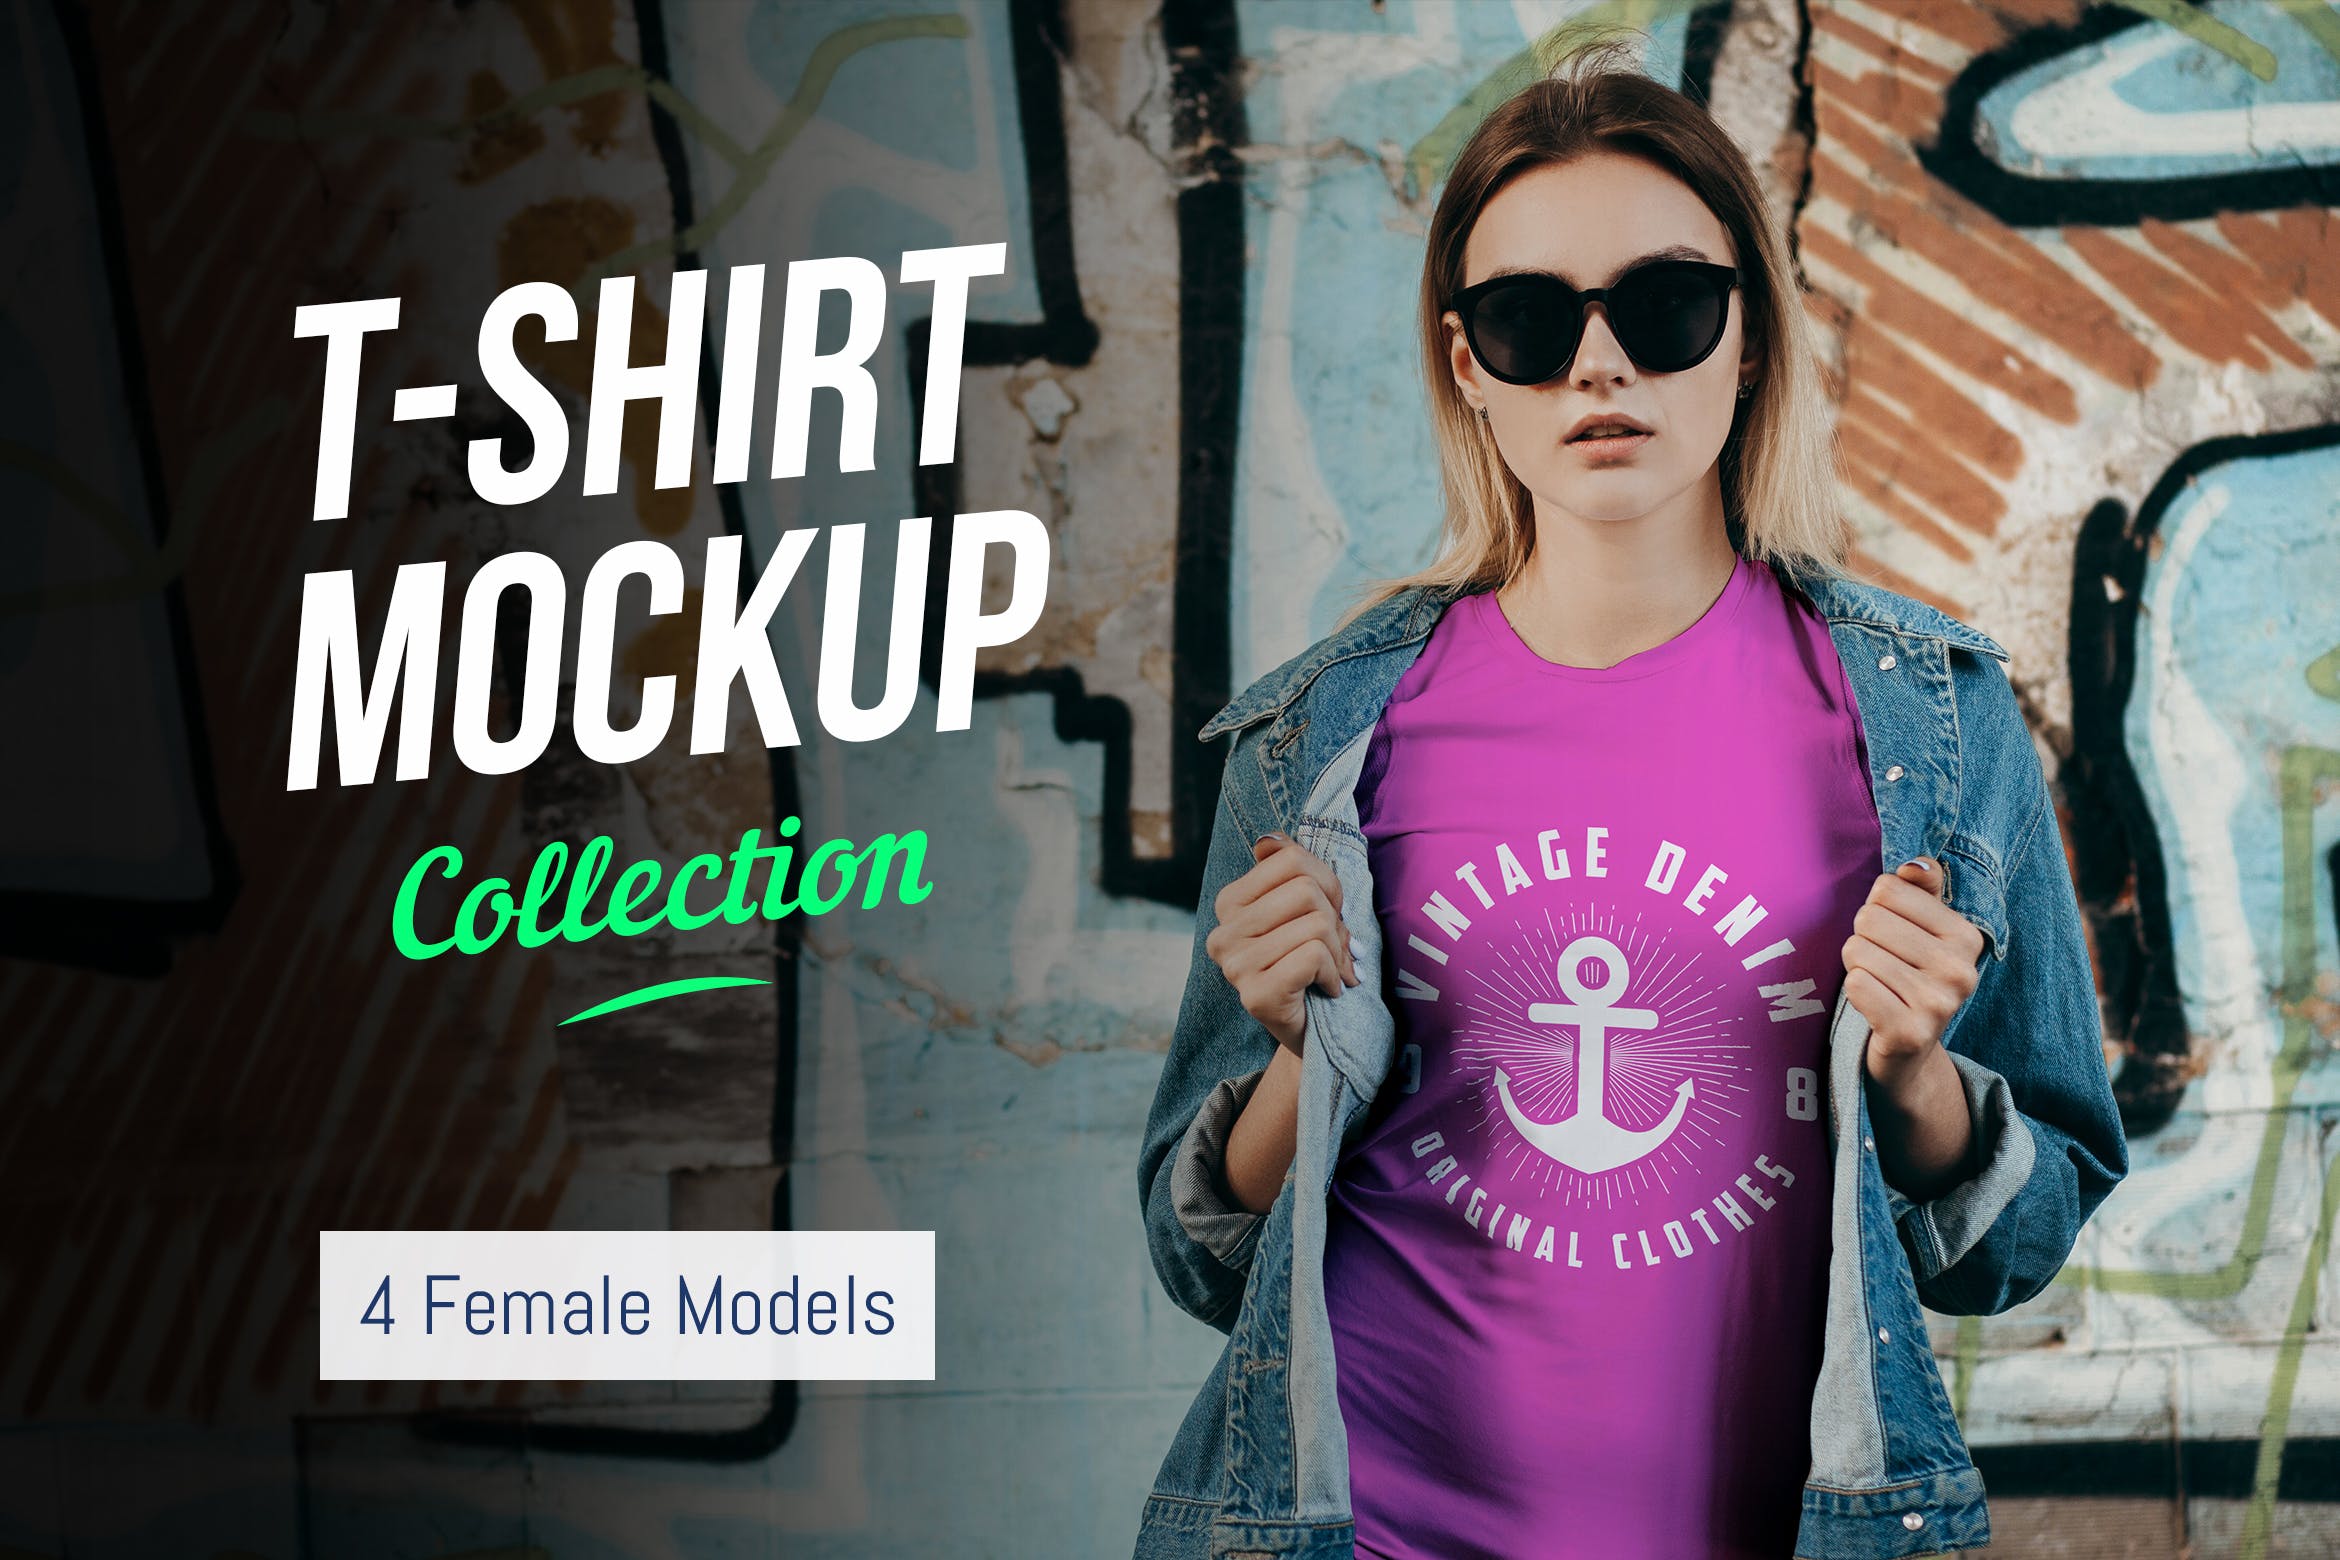 女士T恤印花设计效果图样机蚂蚁素材精选合集v02 T-Shirt Mockup Collection 02插图